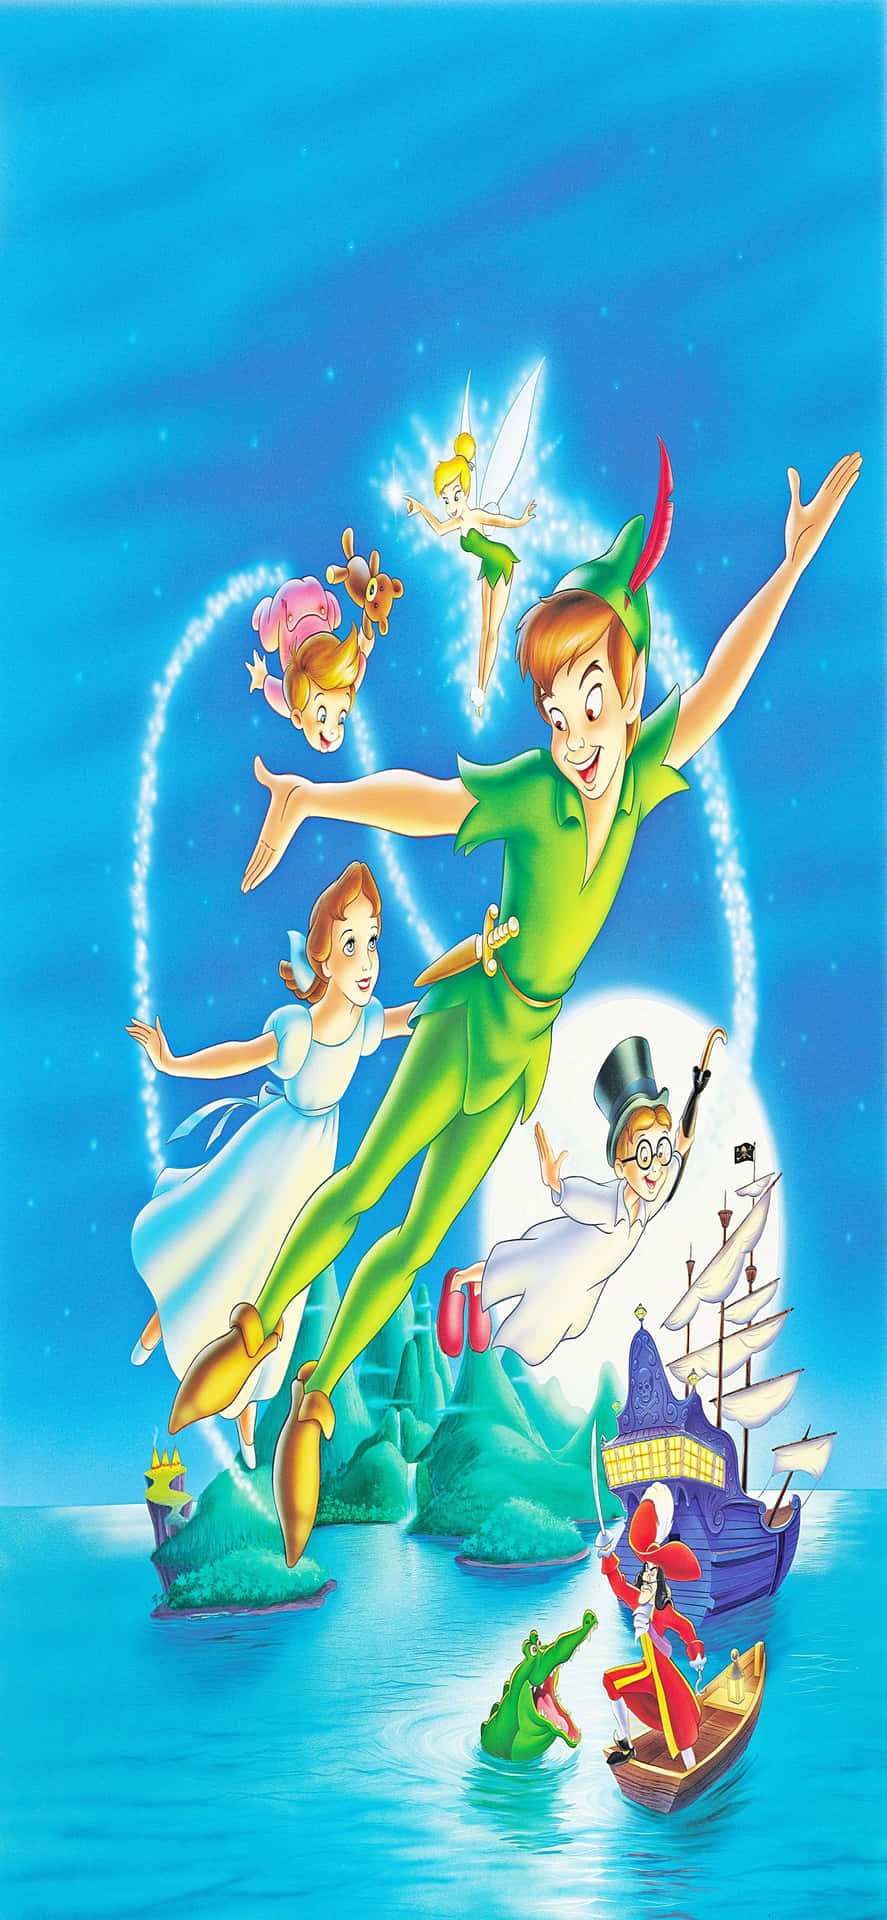 Iphonex Disney Bakgrund Med Wendy Och Peter Pan.